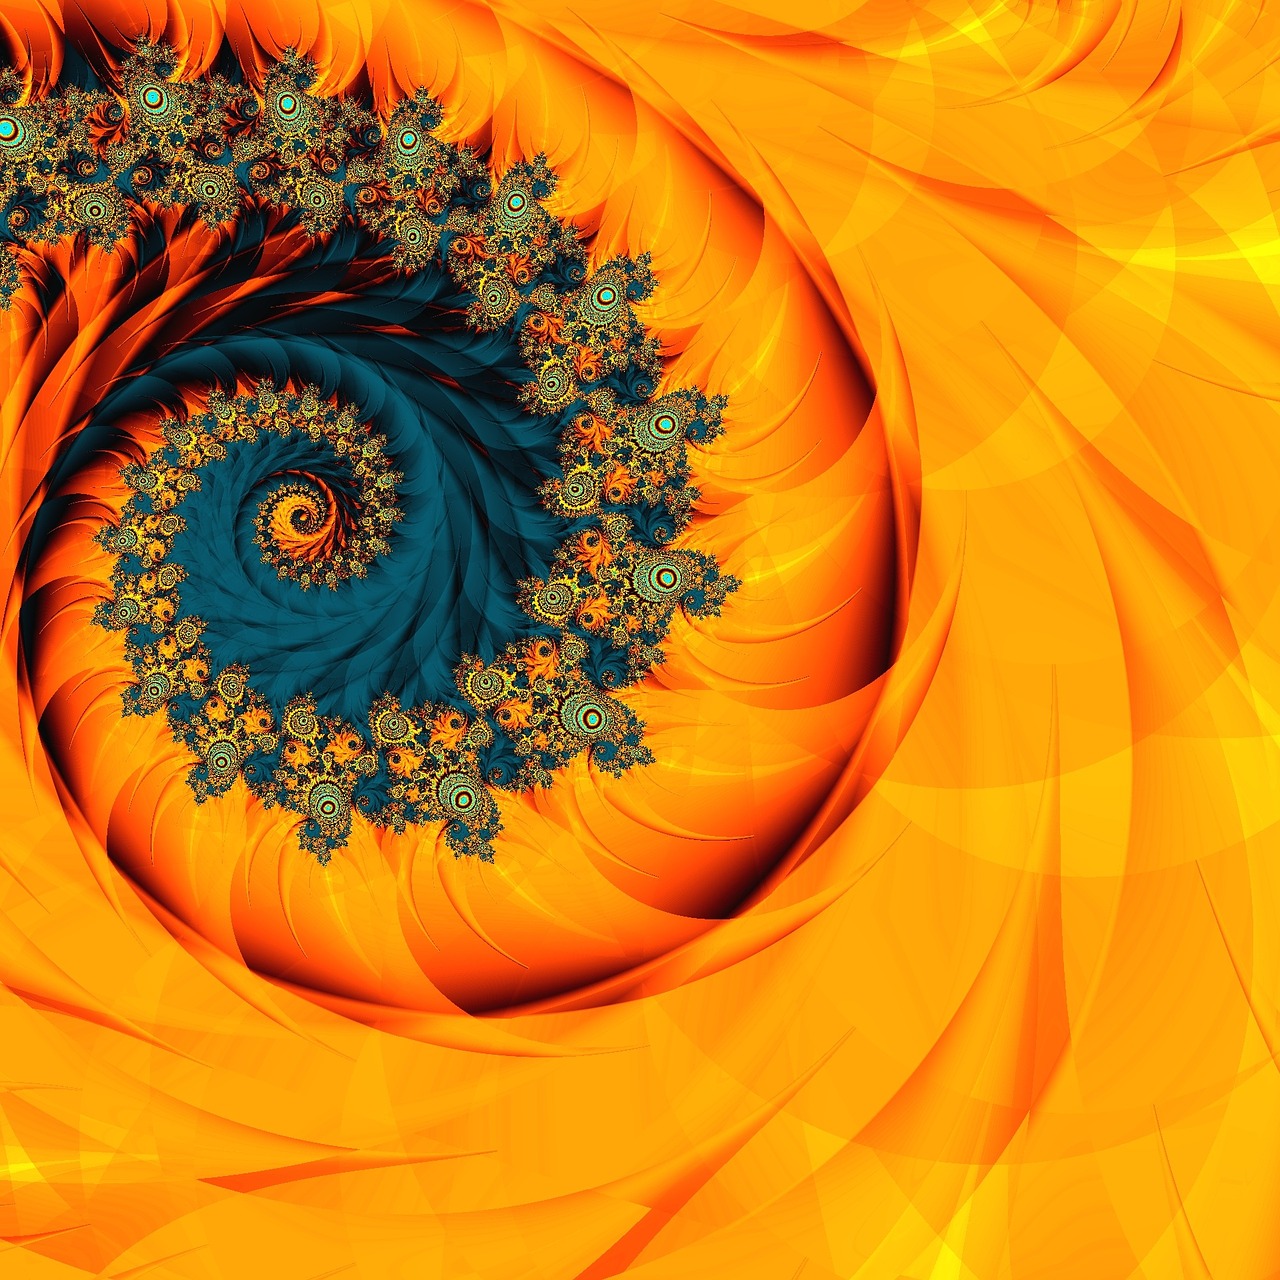 Fibonacci fractal art